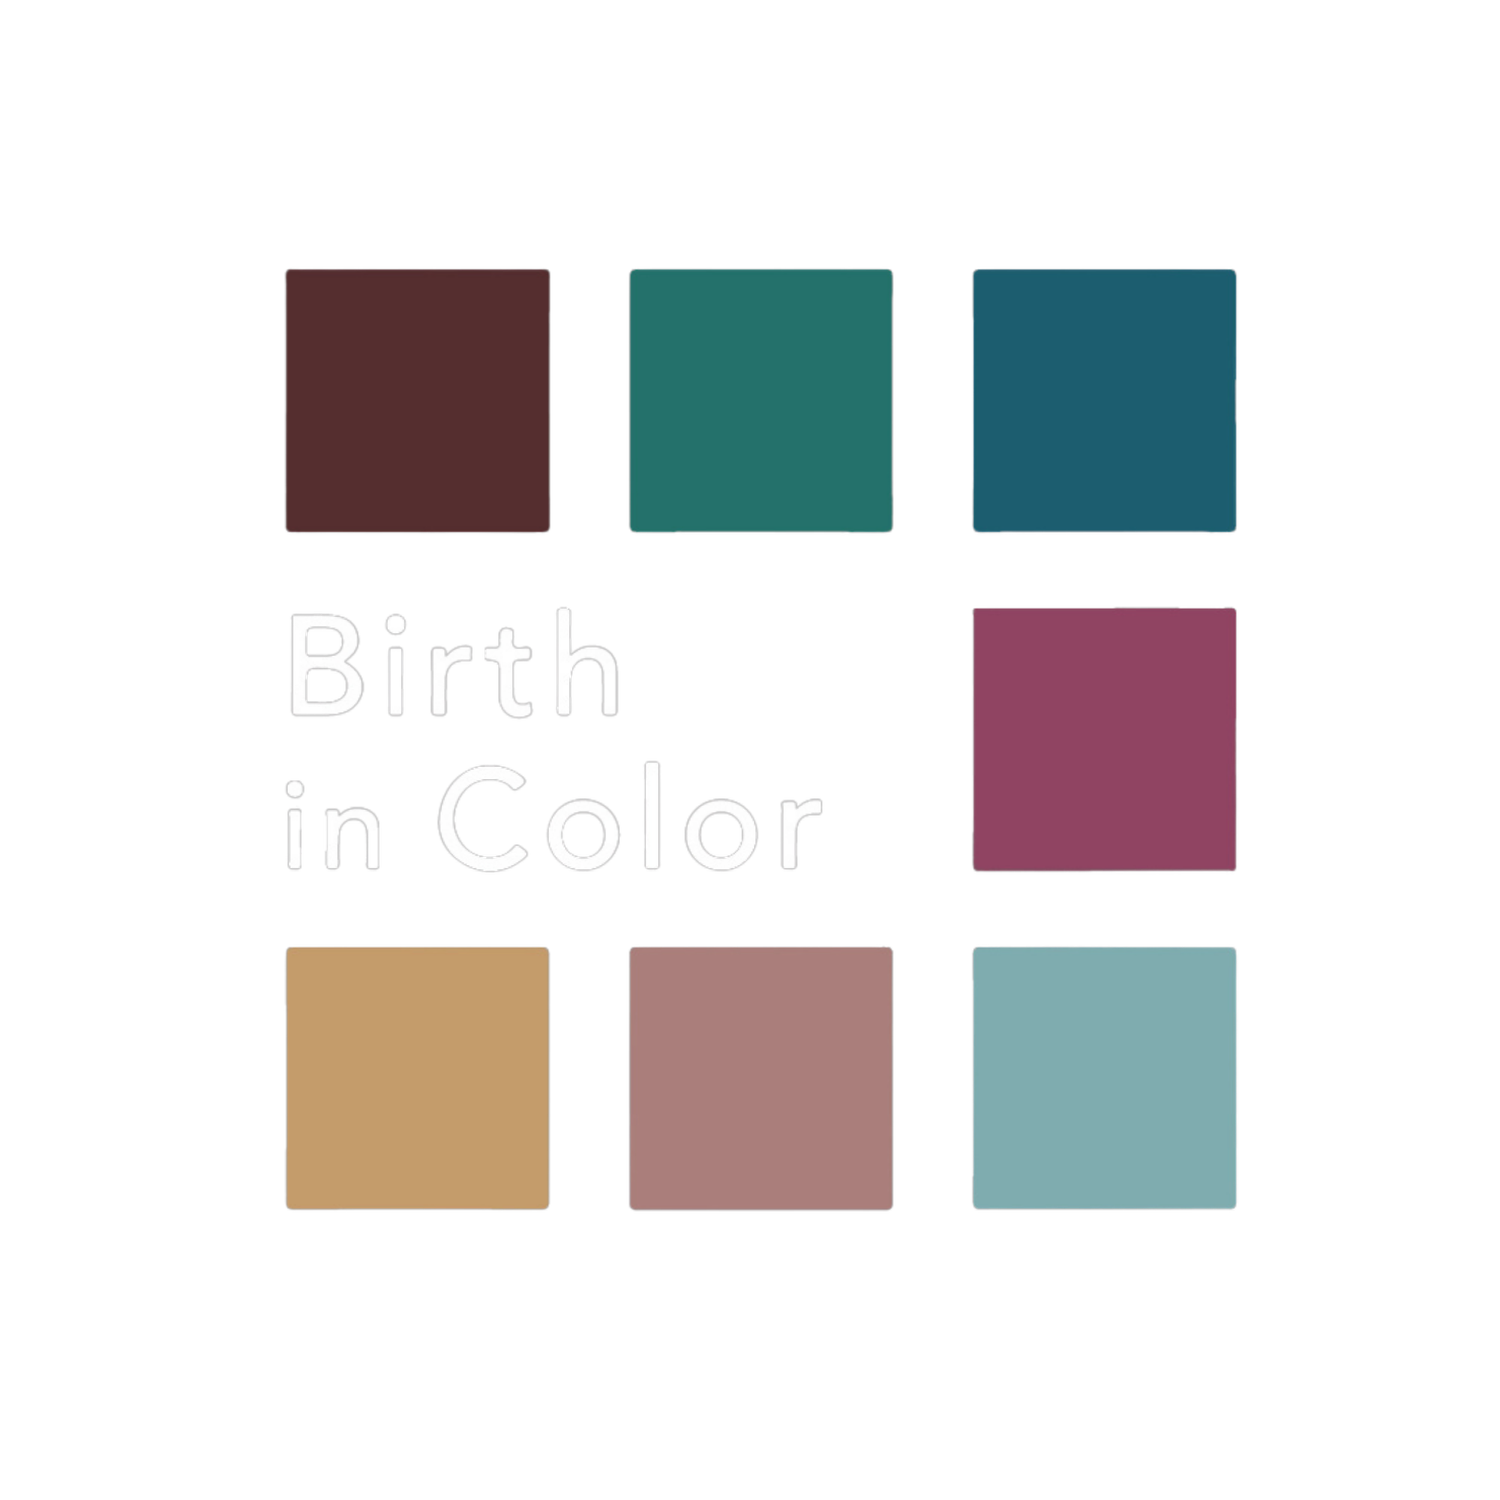 Birth in Color